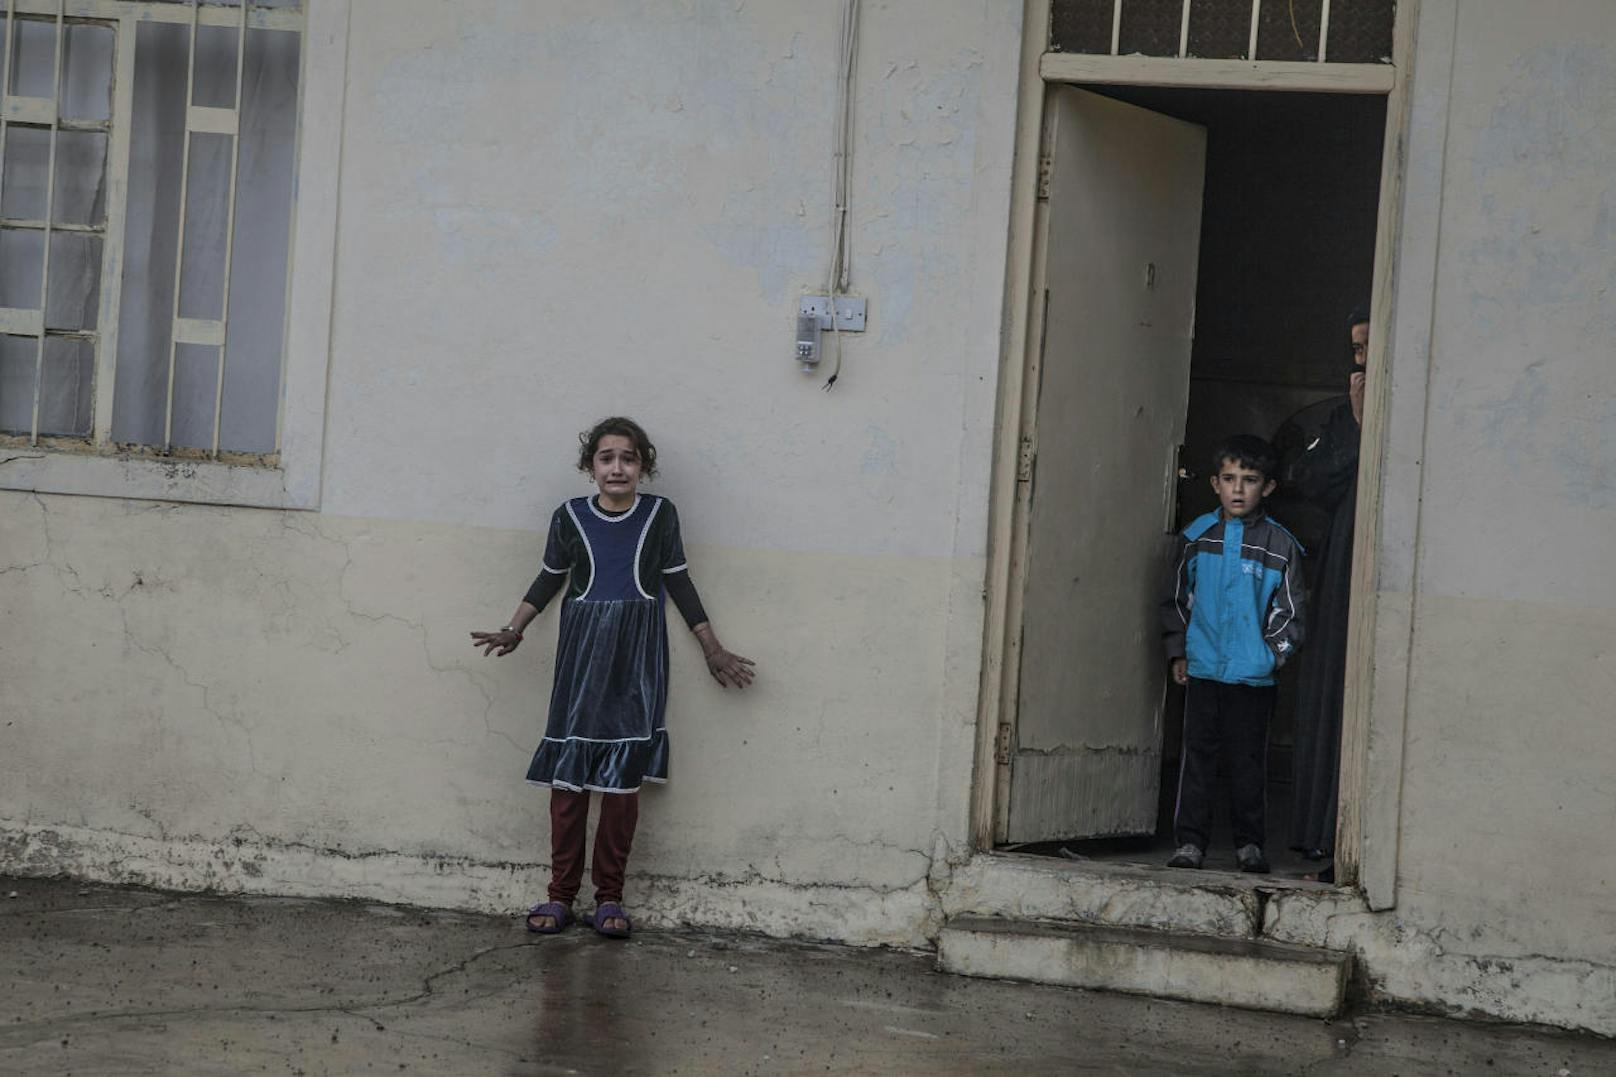 <b>Reportagen ? Erster Preis, Einzelbilder</b>
Laurent Van der Stockt
Getty Images Reportage für Le Monde
Titel: Angriff auf Mosul
In Gogjali, einem der östlichen Bezirke von Mosul, durchsuchen Mitglieder irakischer Spezialeinheiten am 2. November 2016 die Häuser nach IS-Kämpfern, Ausrüstung und Spuren.